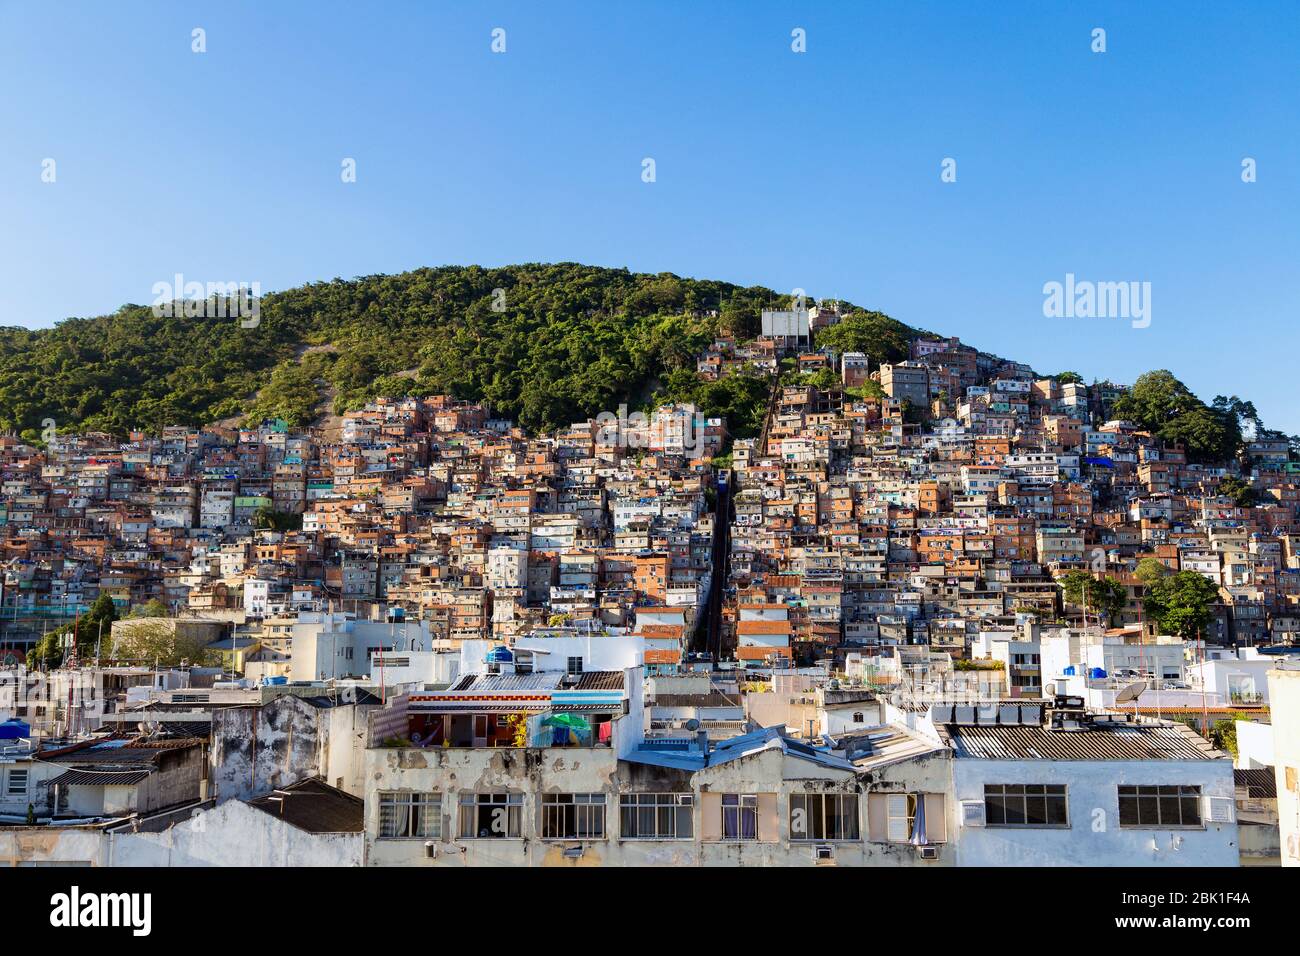 Favela von Rio de Janeiro, Brasilien. Bunte Häuser in einem Hügel. Zona Sul von Rio. Arme Viertel der Stadt. Stockfoto